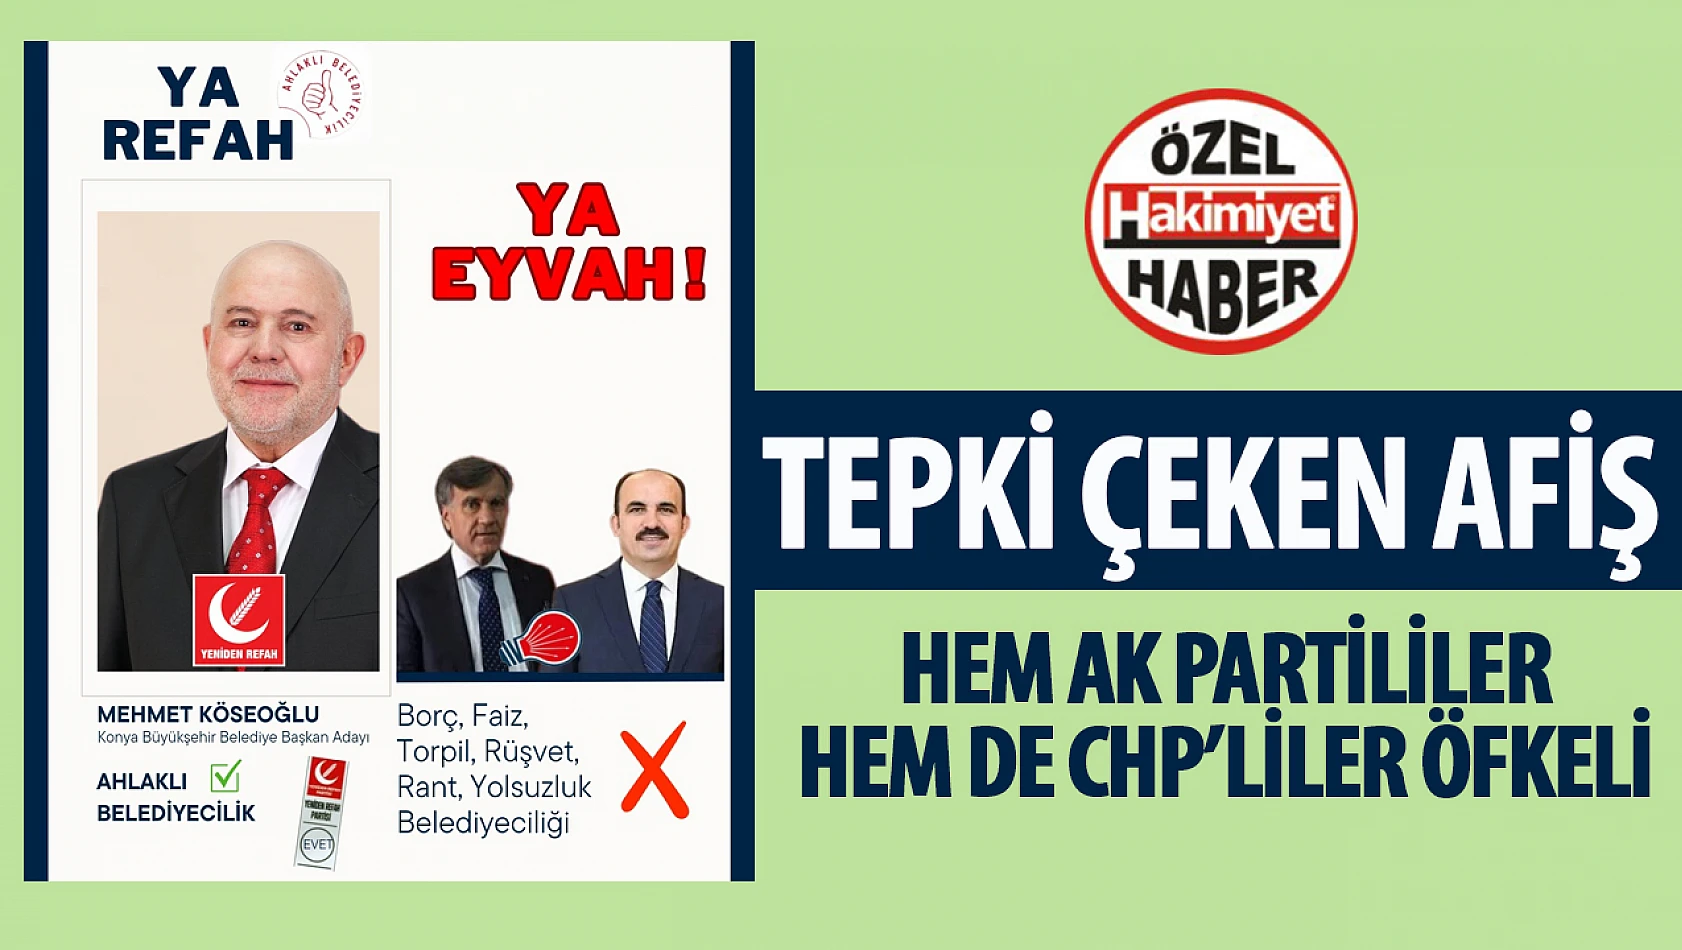 Konya'da Seçim Afişinde Sert Eleştiriler: 'Ahlaklı Belediyecilik Partisi' Tartışması 